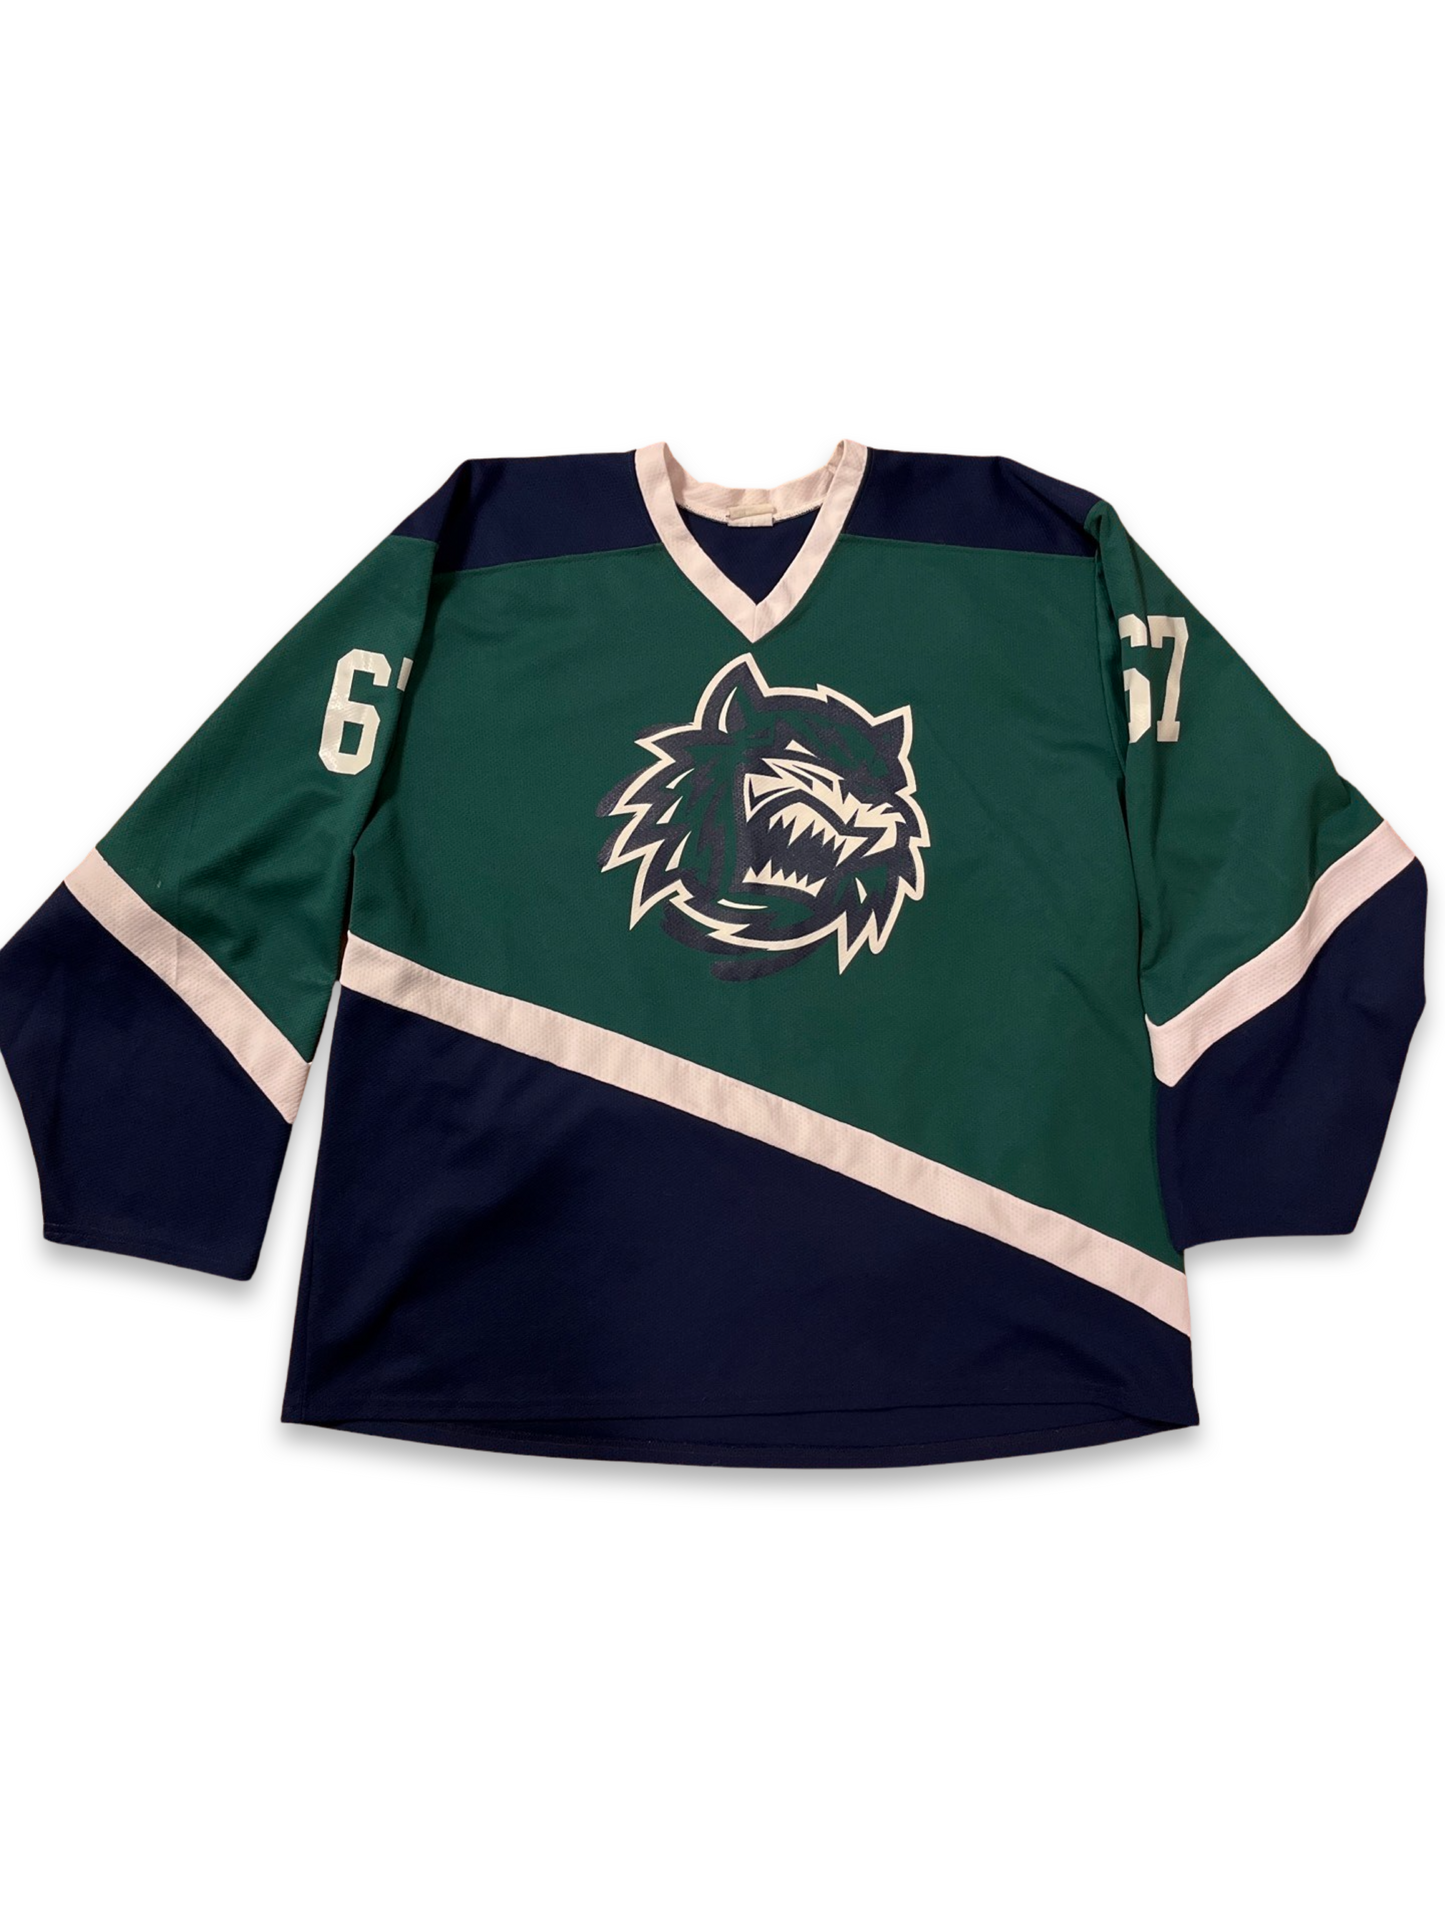 Hockey Jersey - Green and Navy (XXL)